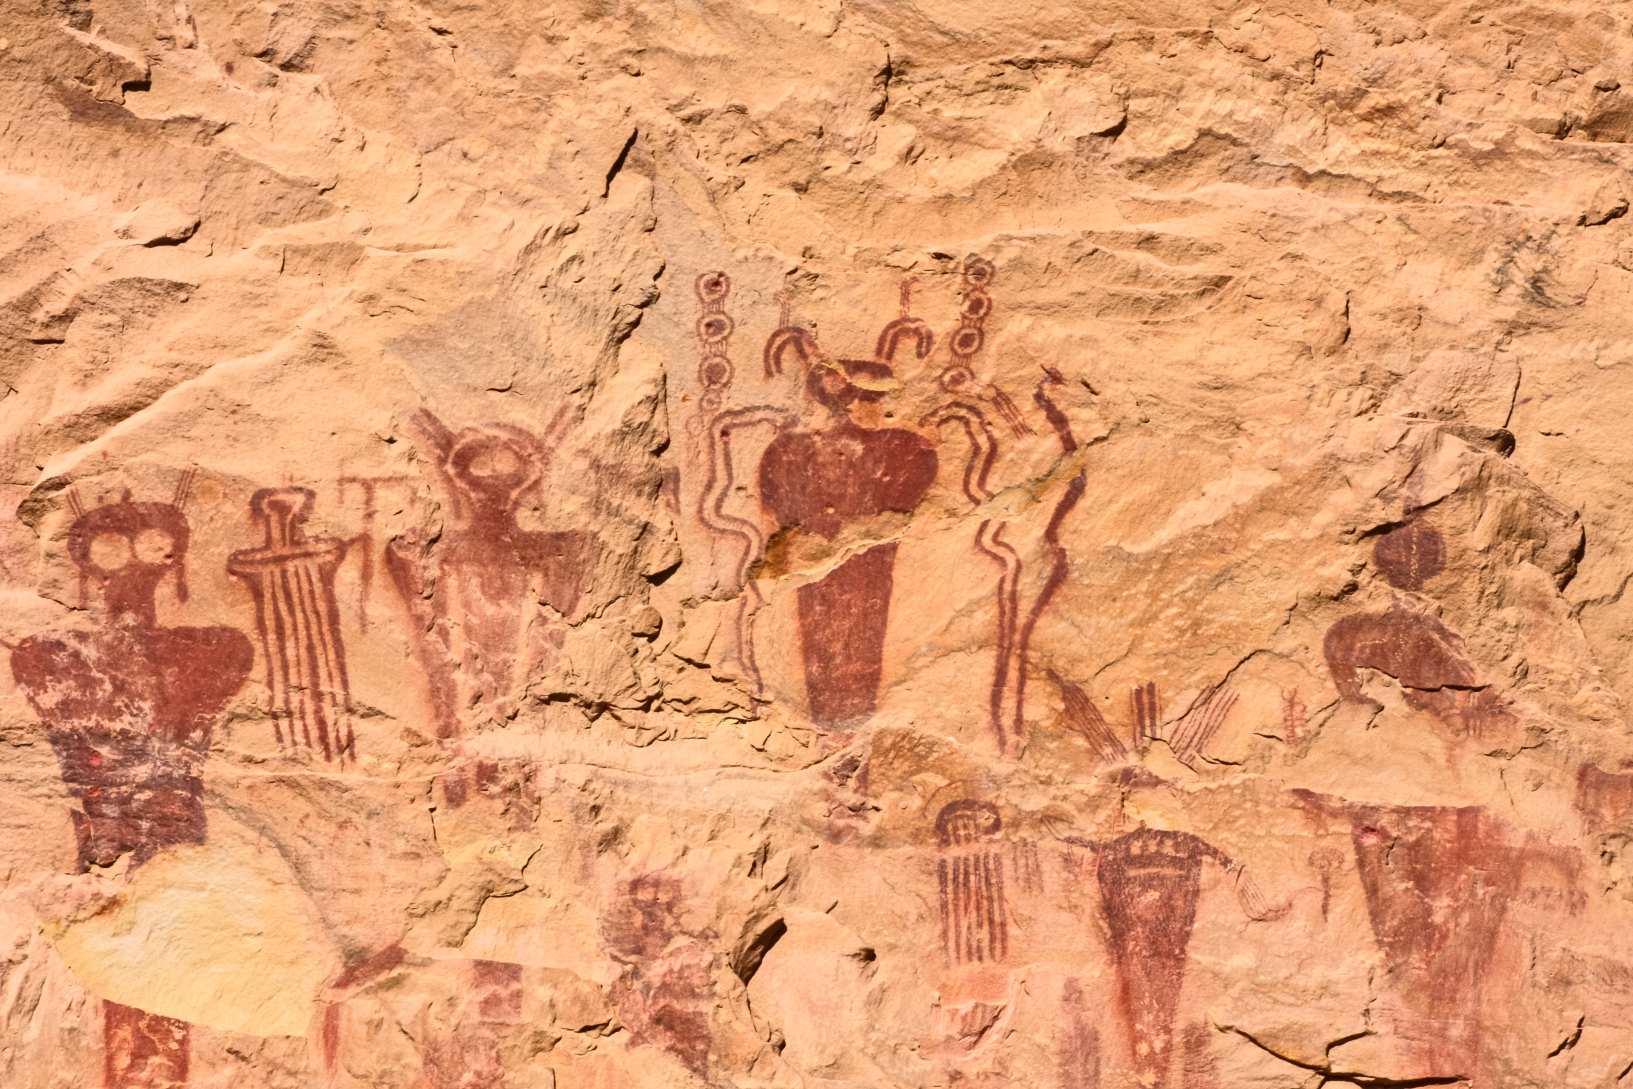 Enigma of the Anasazi: Entschlüsselung der verlorenen alten Geheimnisse einer mysteriösen Zivilisation 3